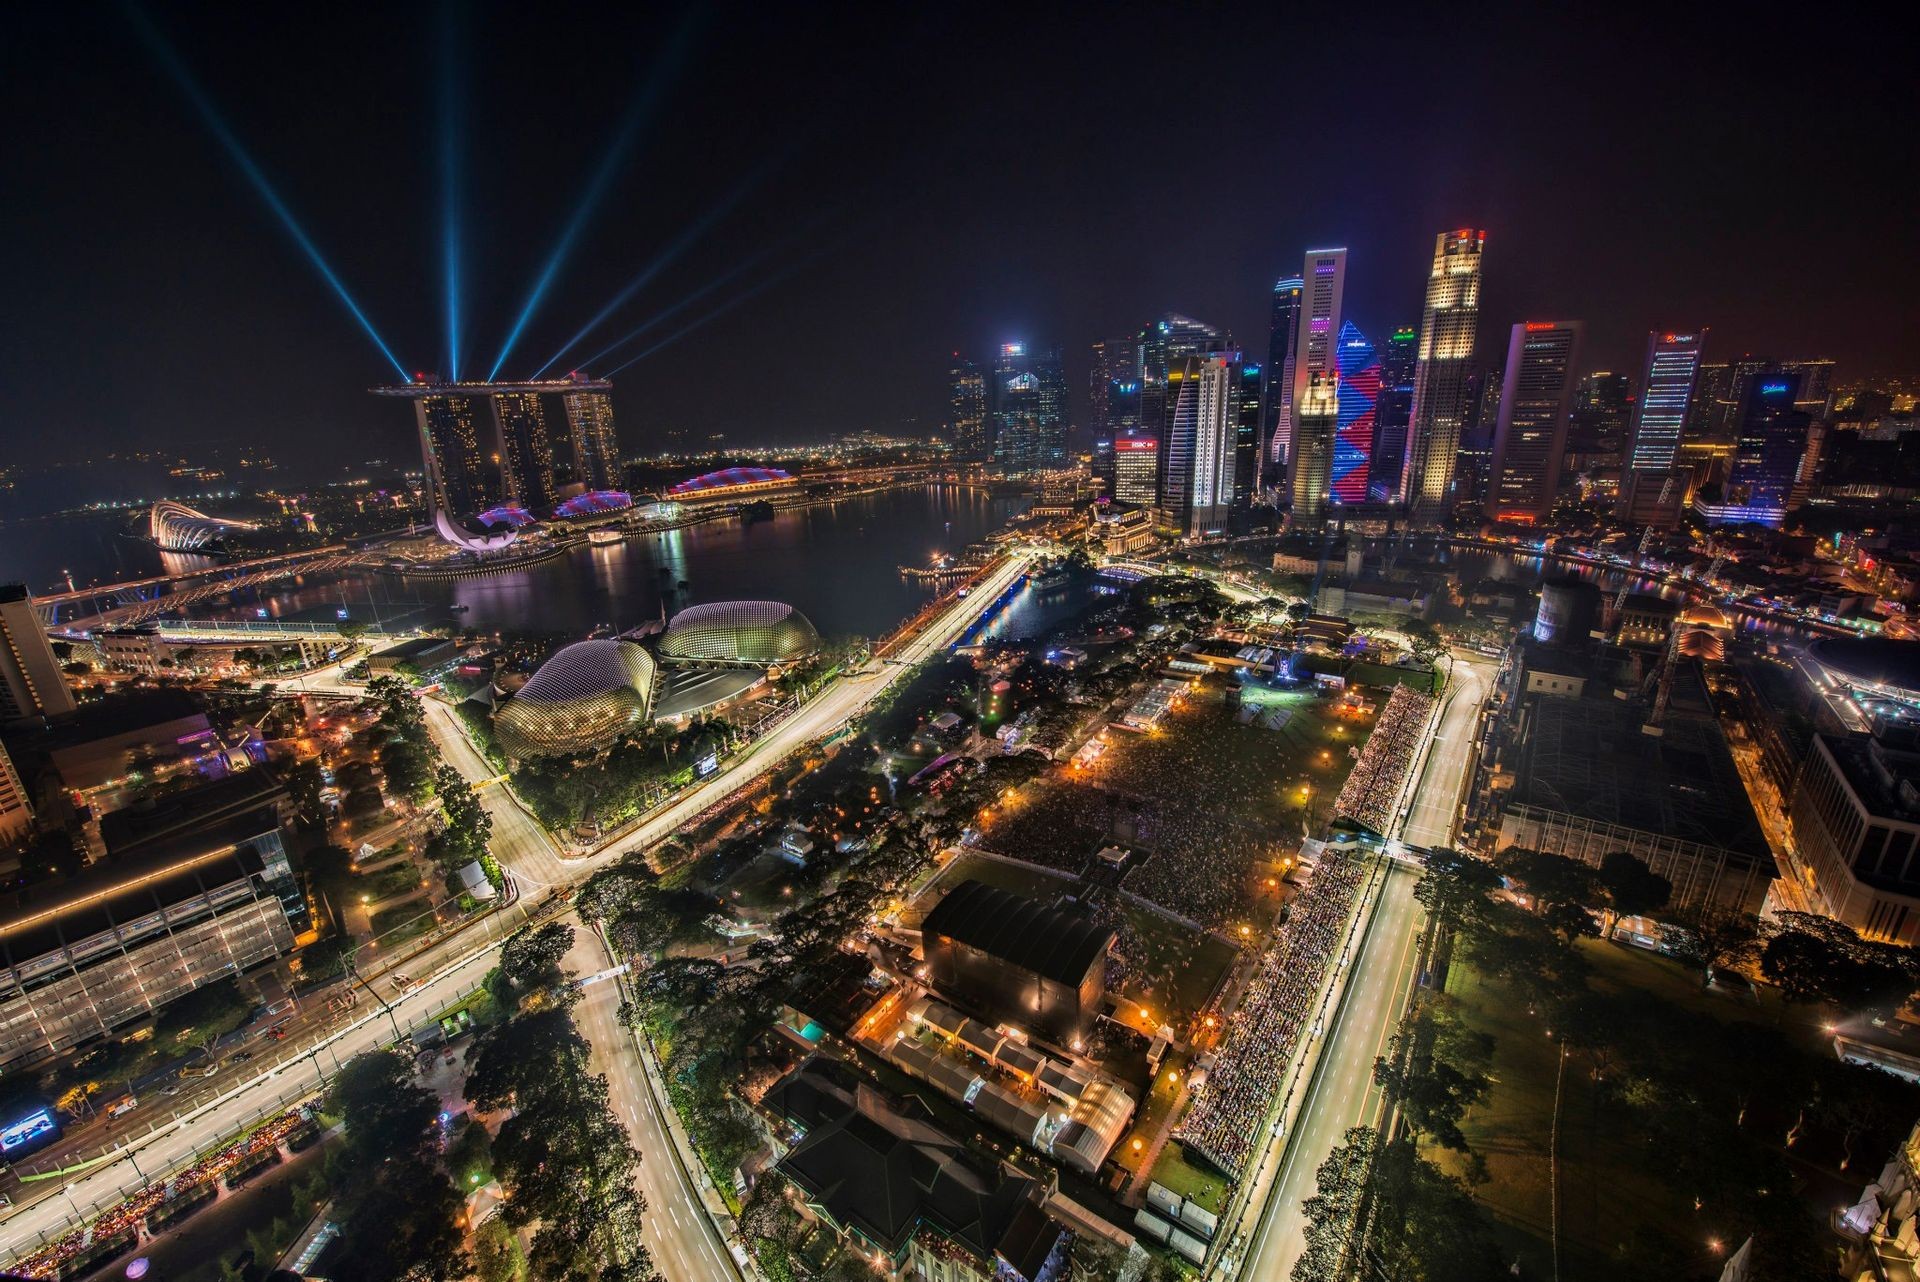 2016F1シンガポールグランプリガイド！シンガポールの夜を駆け抜ける！